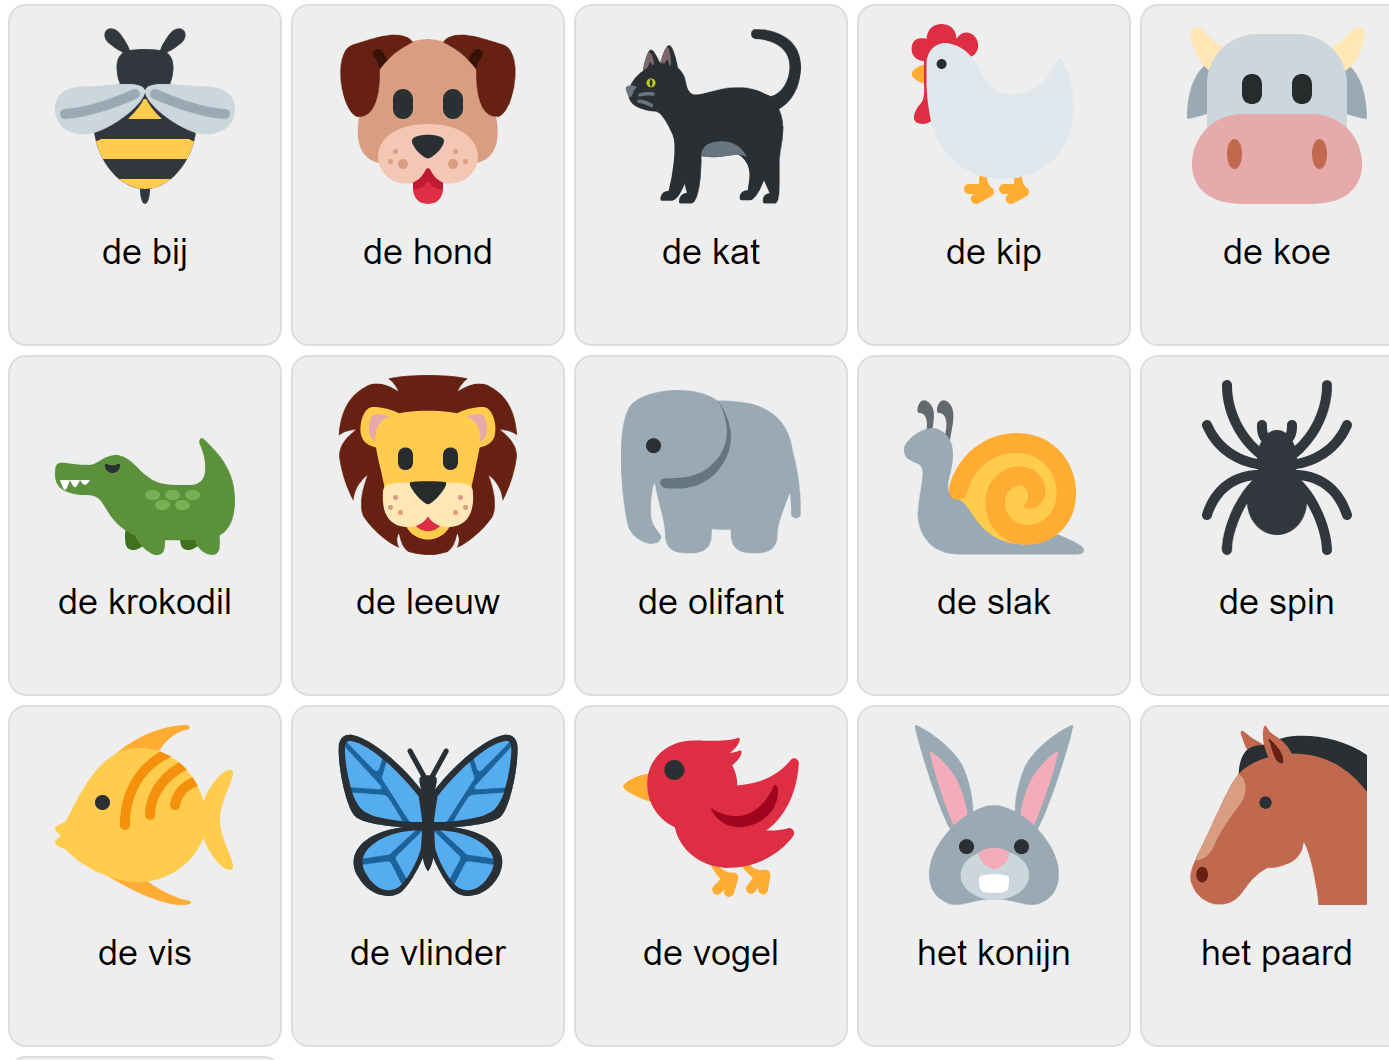 Animals in Dutch